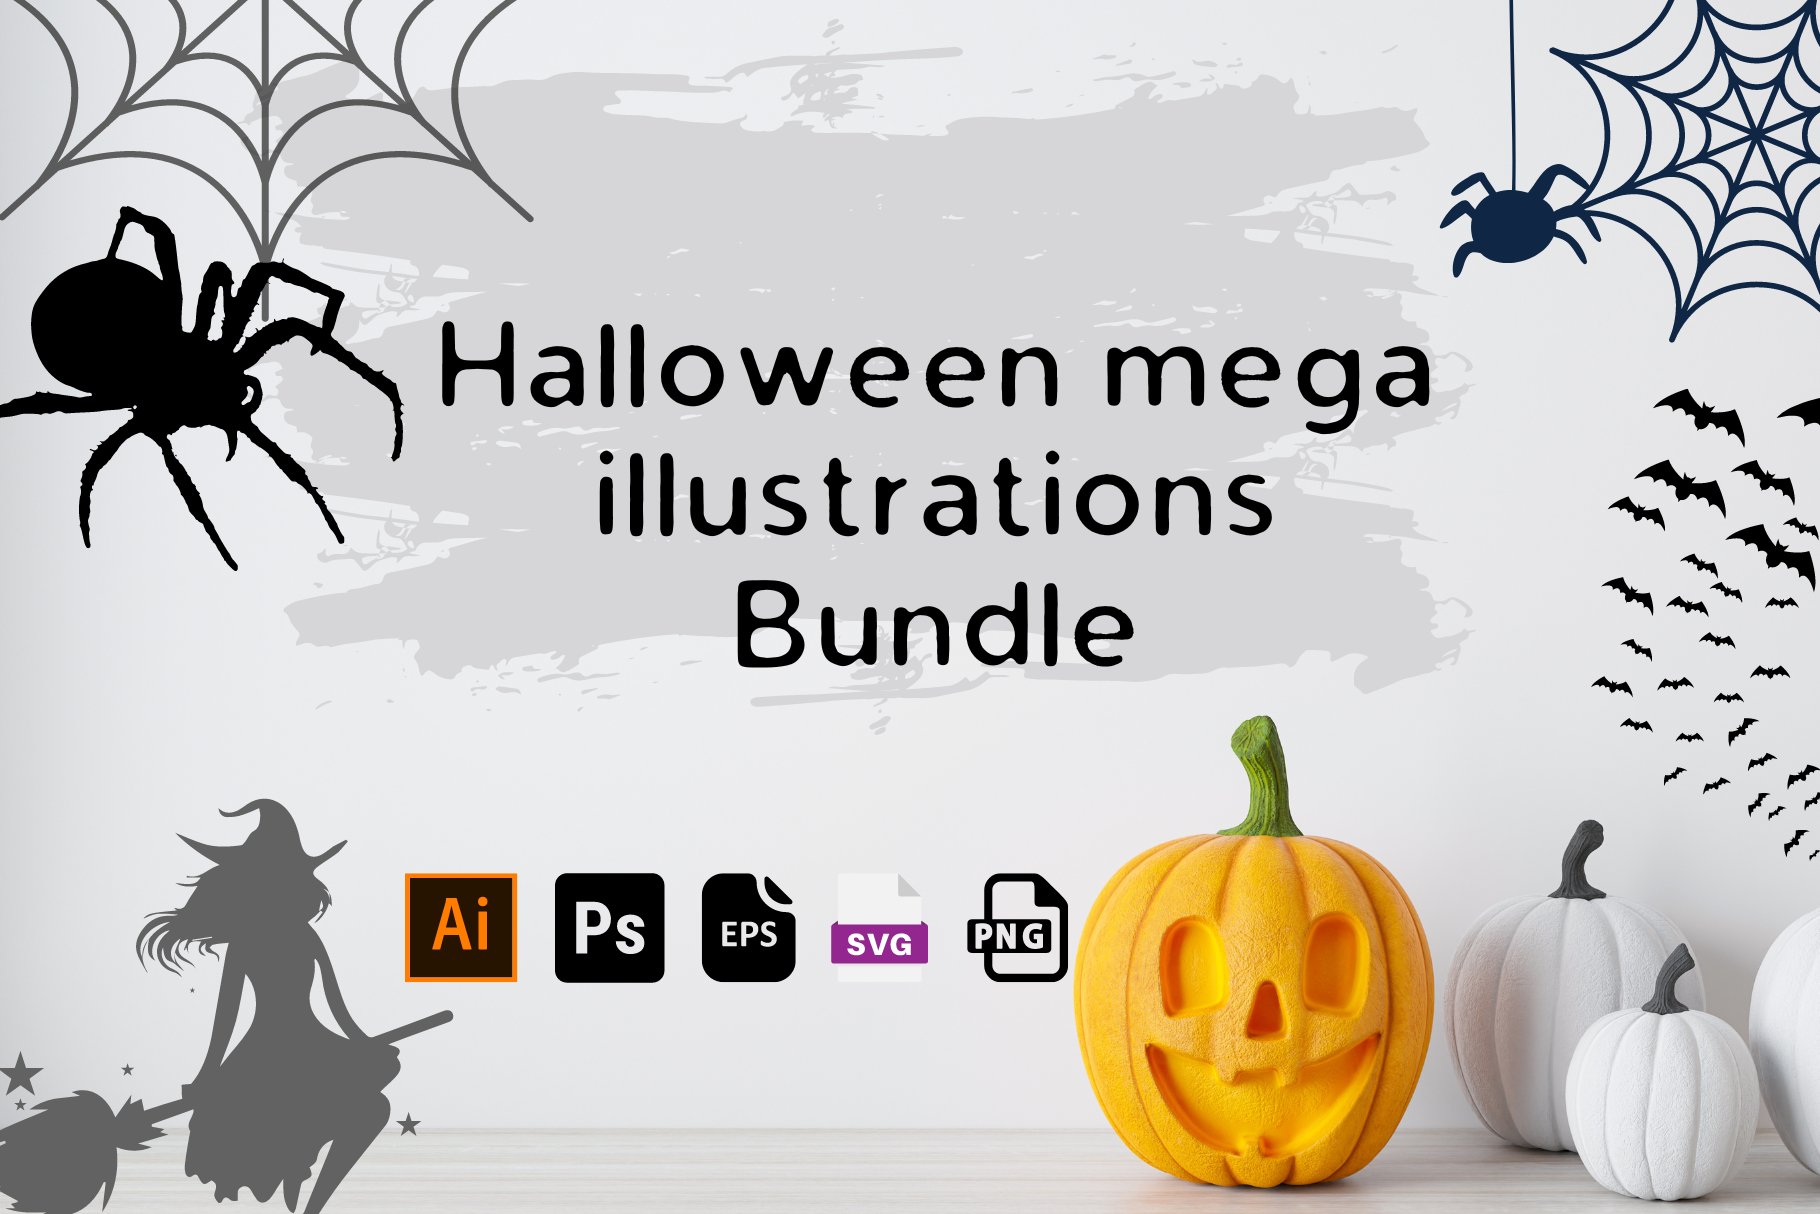 Halloween mega illustrations Bundle preview image.